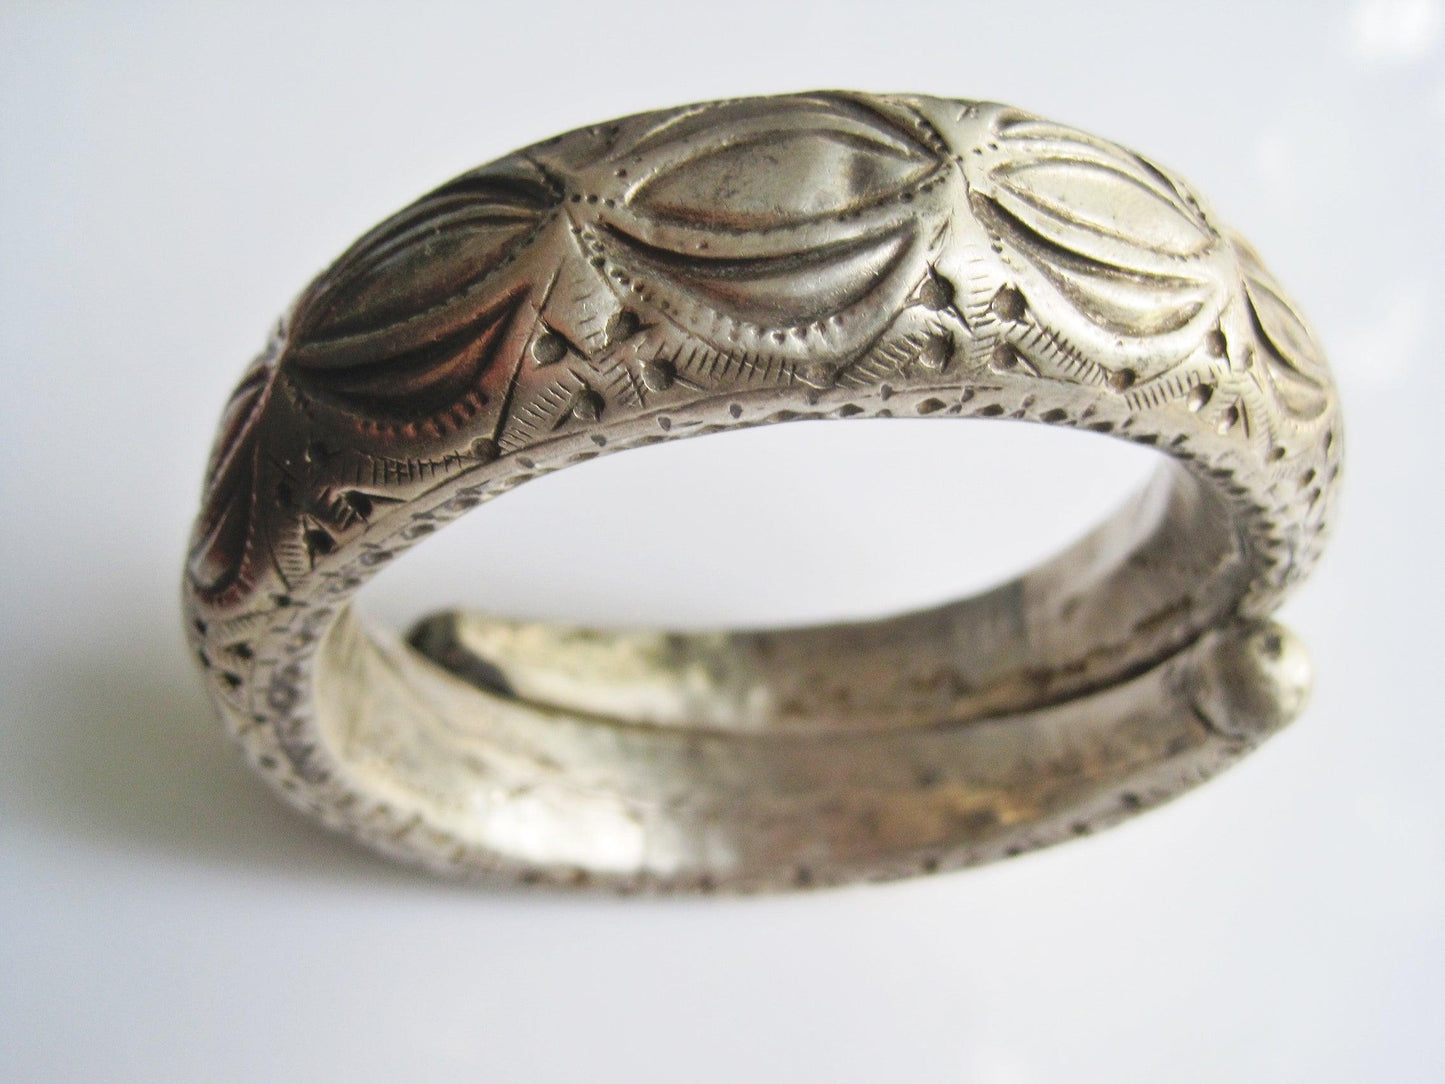 Bedouin silver bracelet